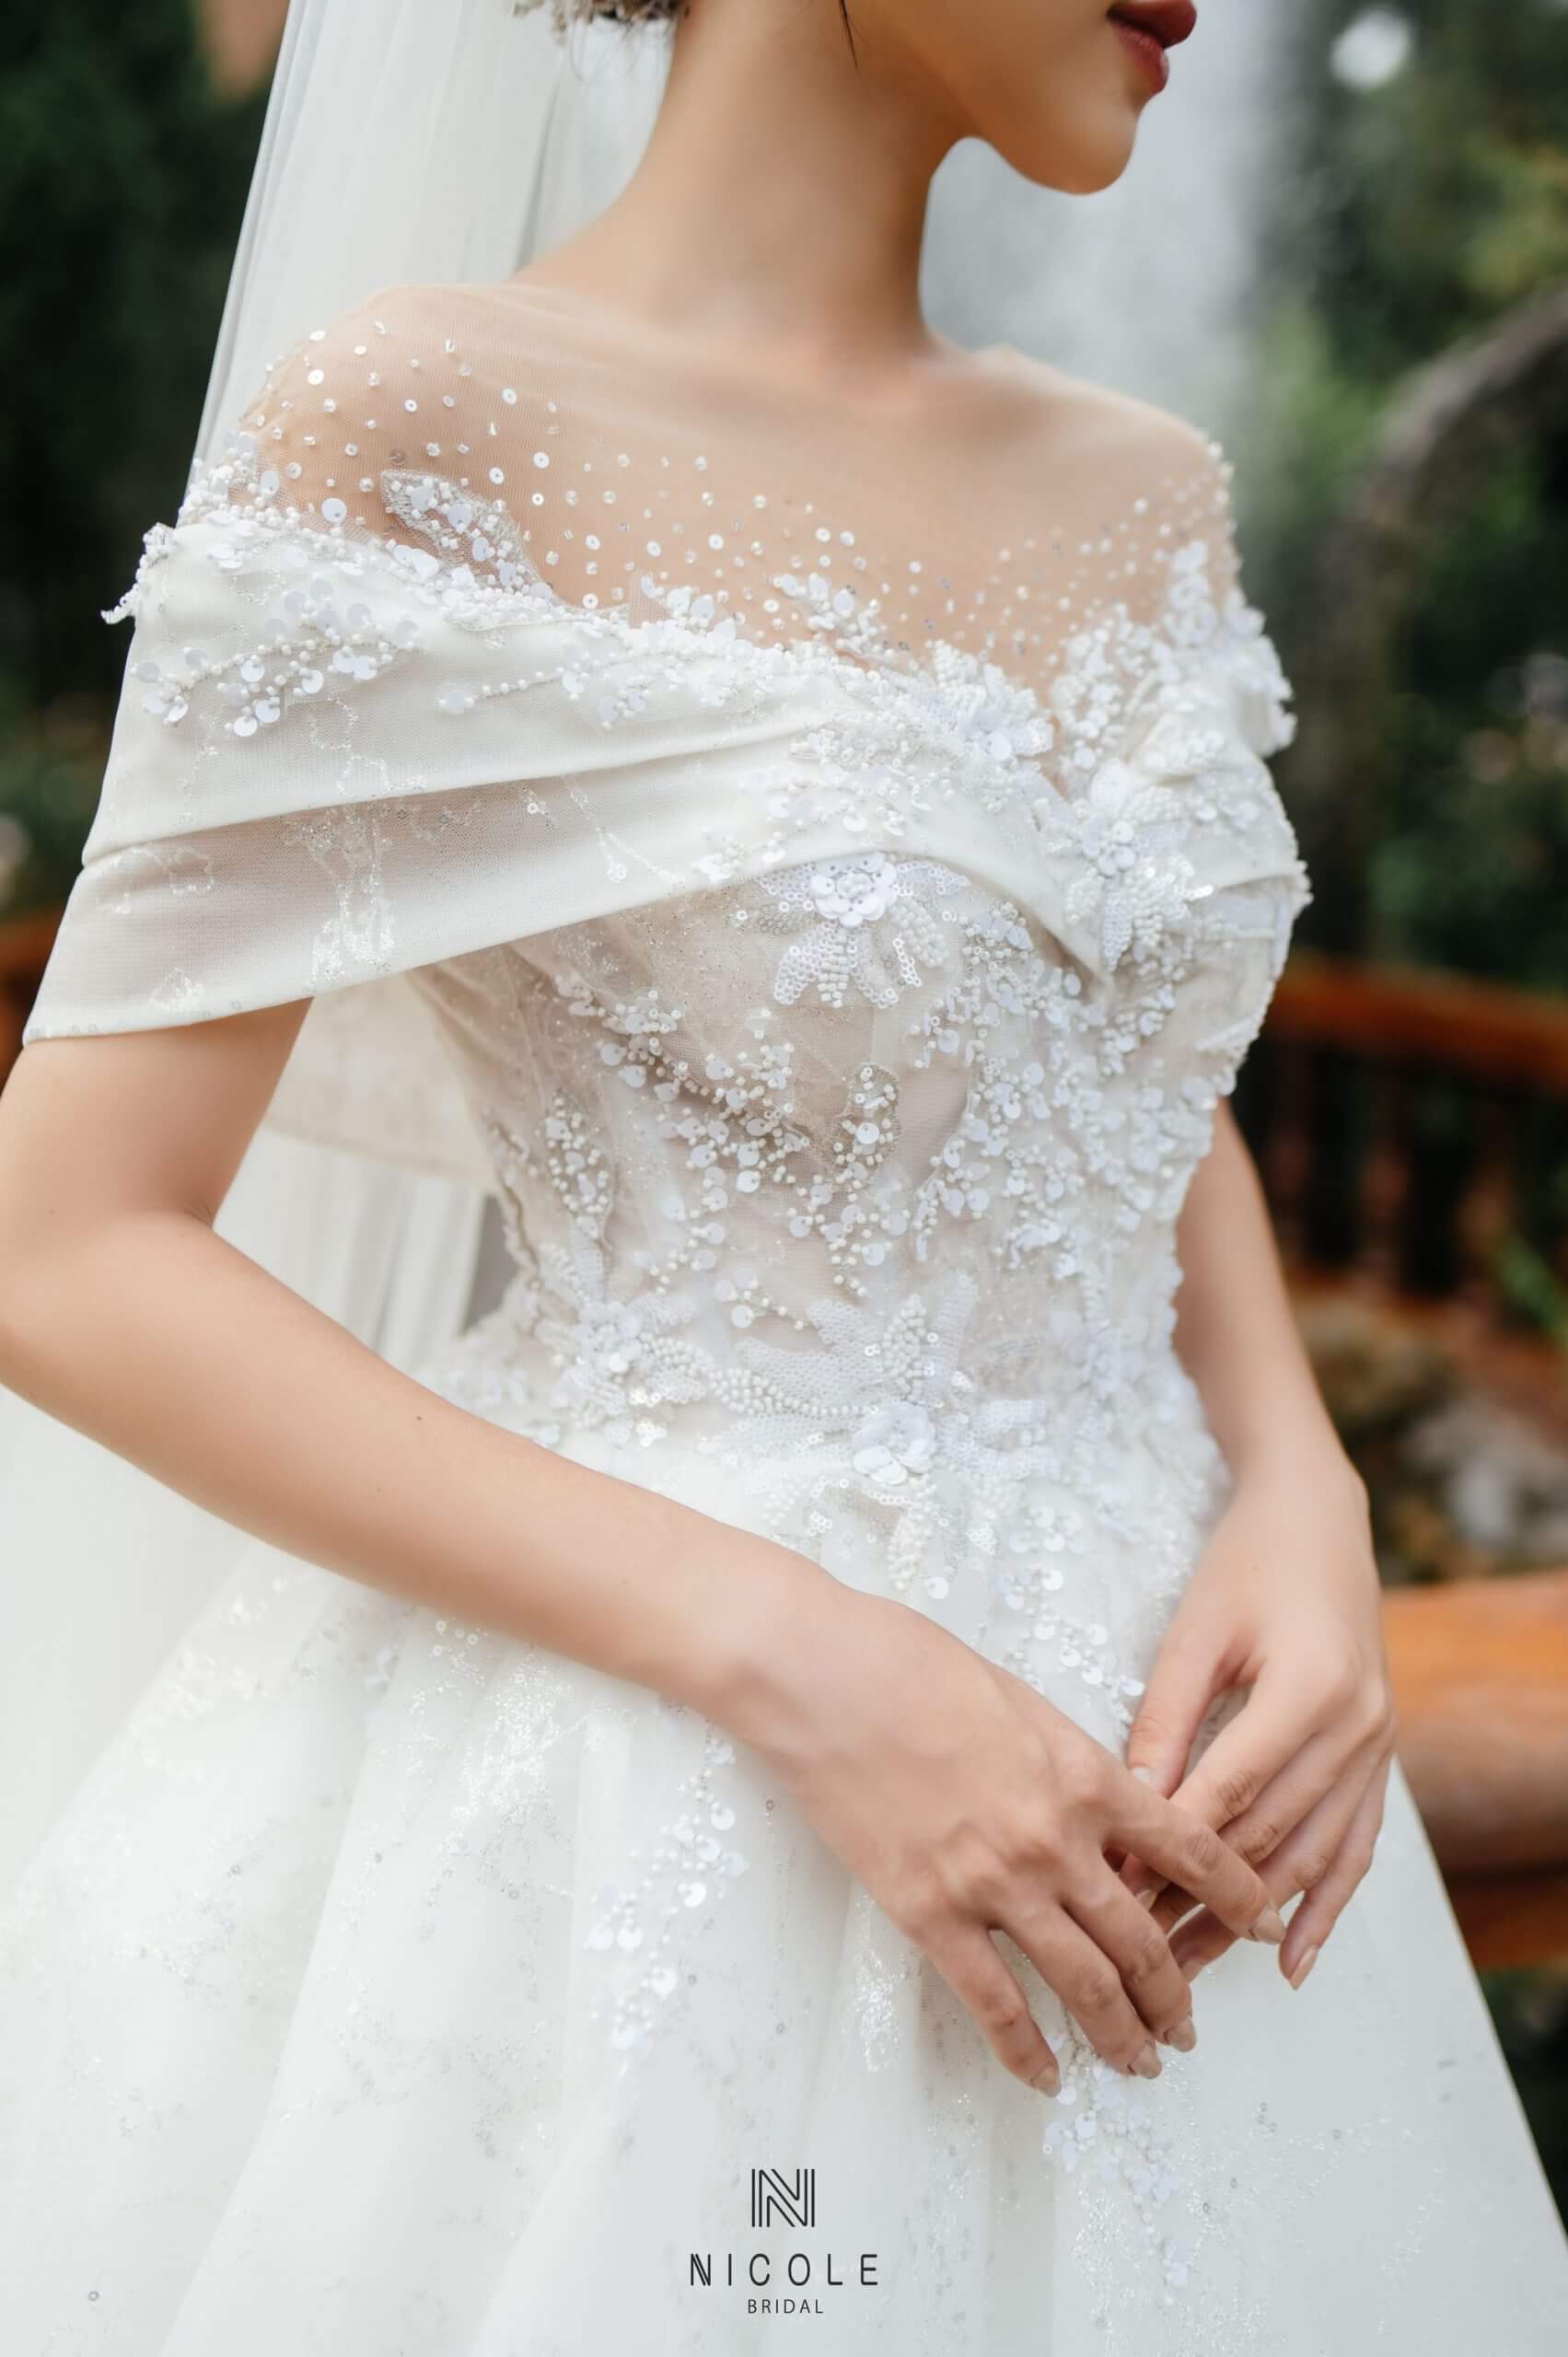 10 chiếc váy cưới Haute Couture của NTK Phương Linh  Ngôi sao